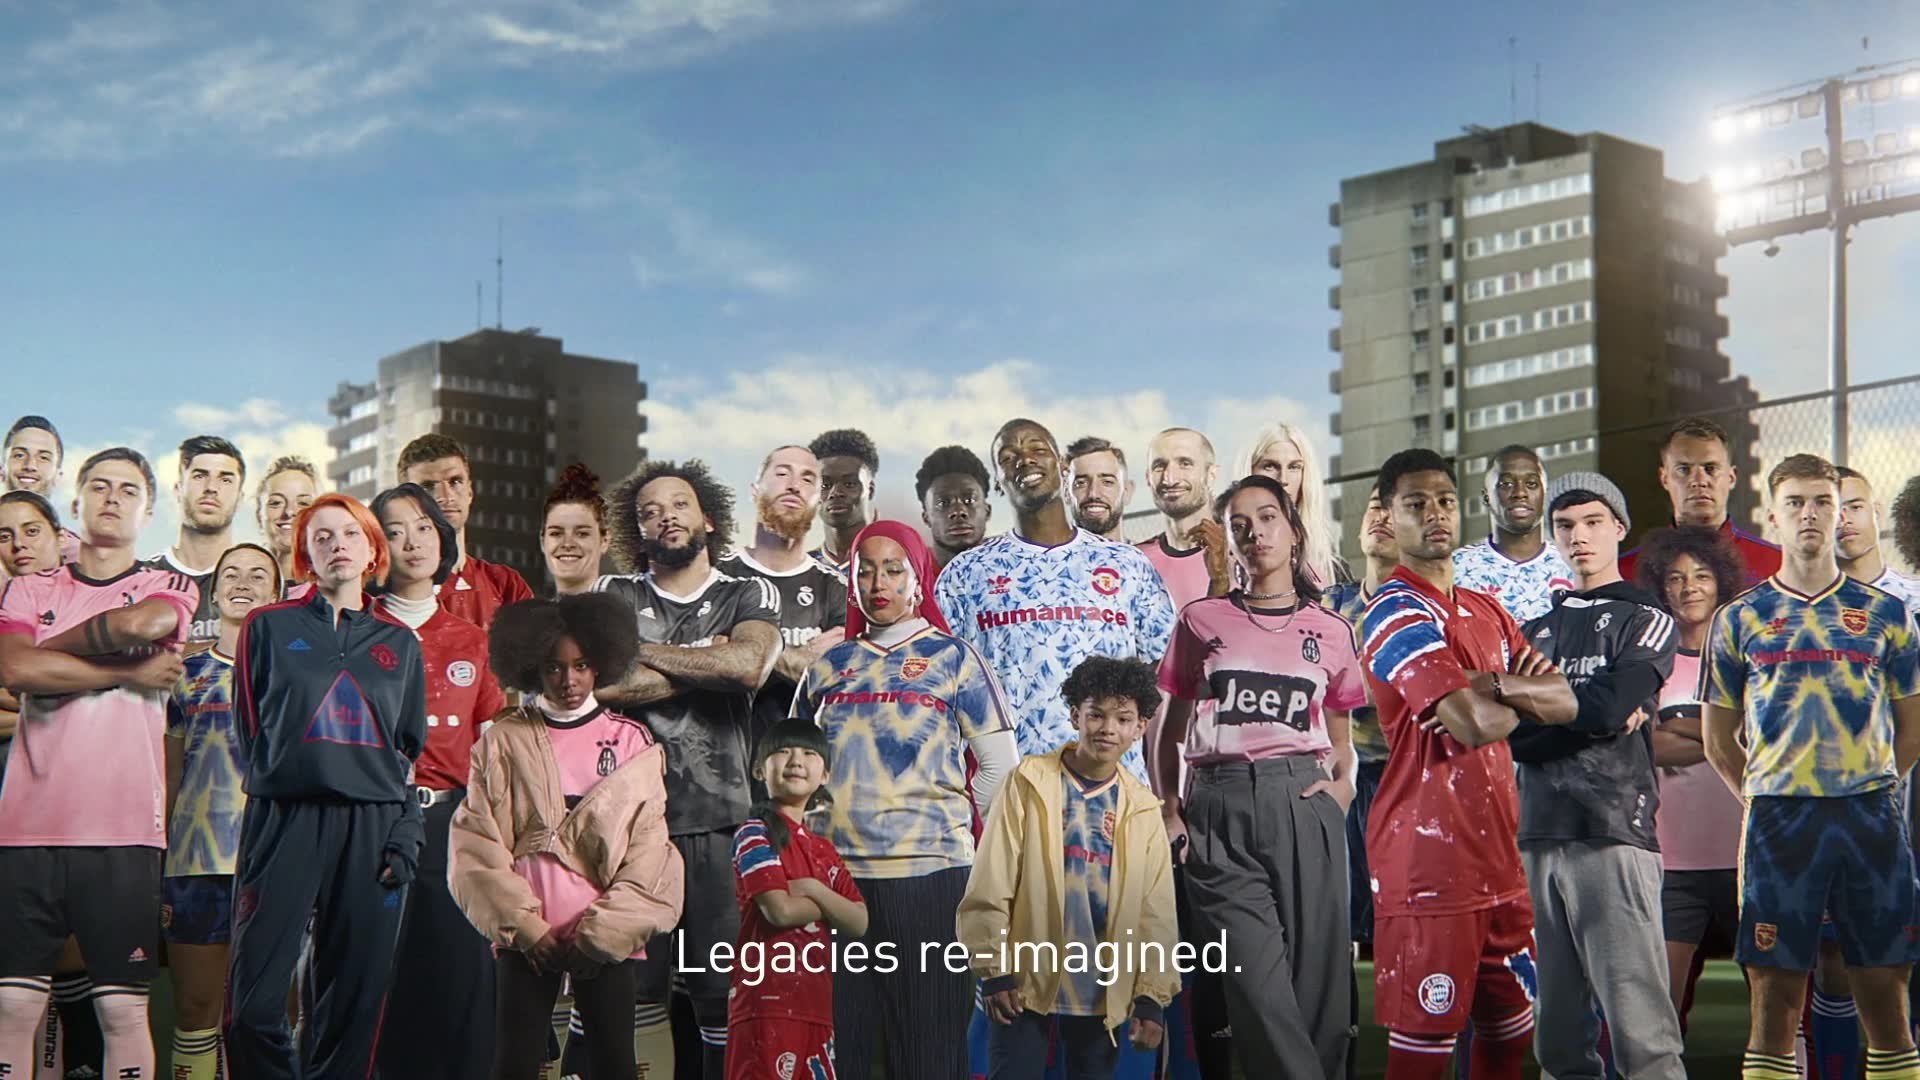 Arsenal & adidas bring back the Bruised Banana - Football Shirt Collective